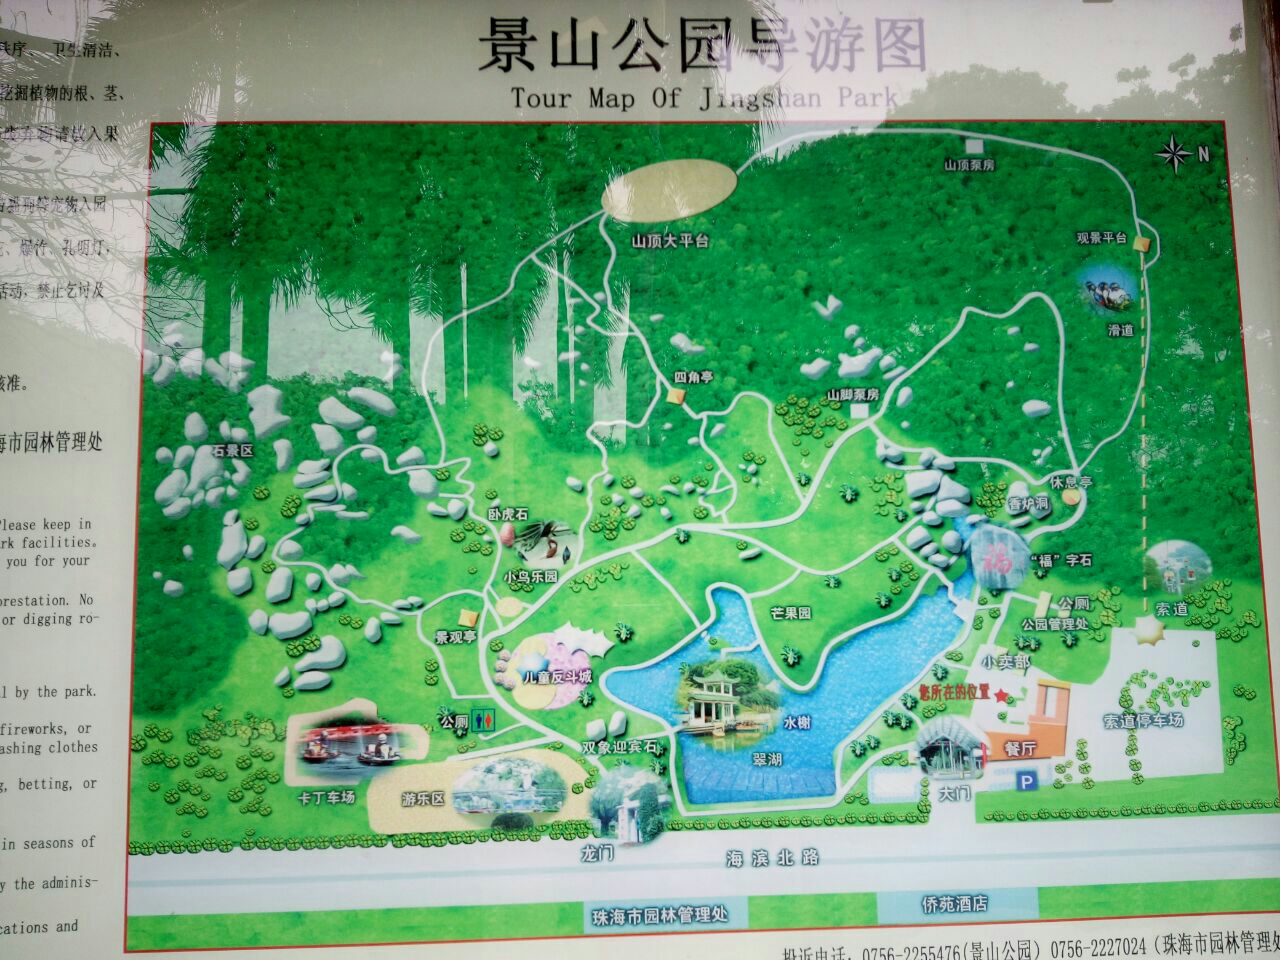 景山公园游览路线图图片